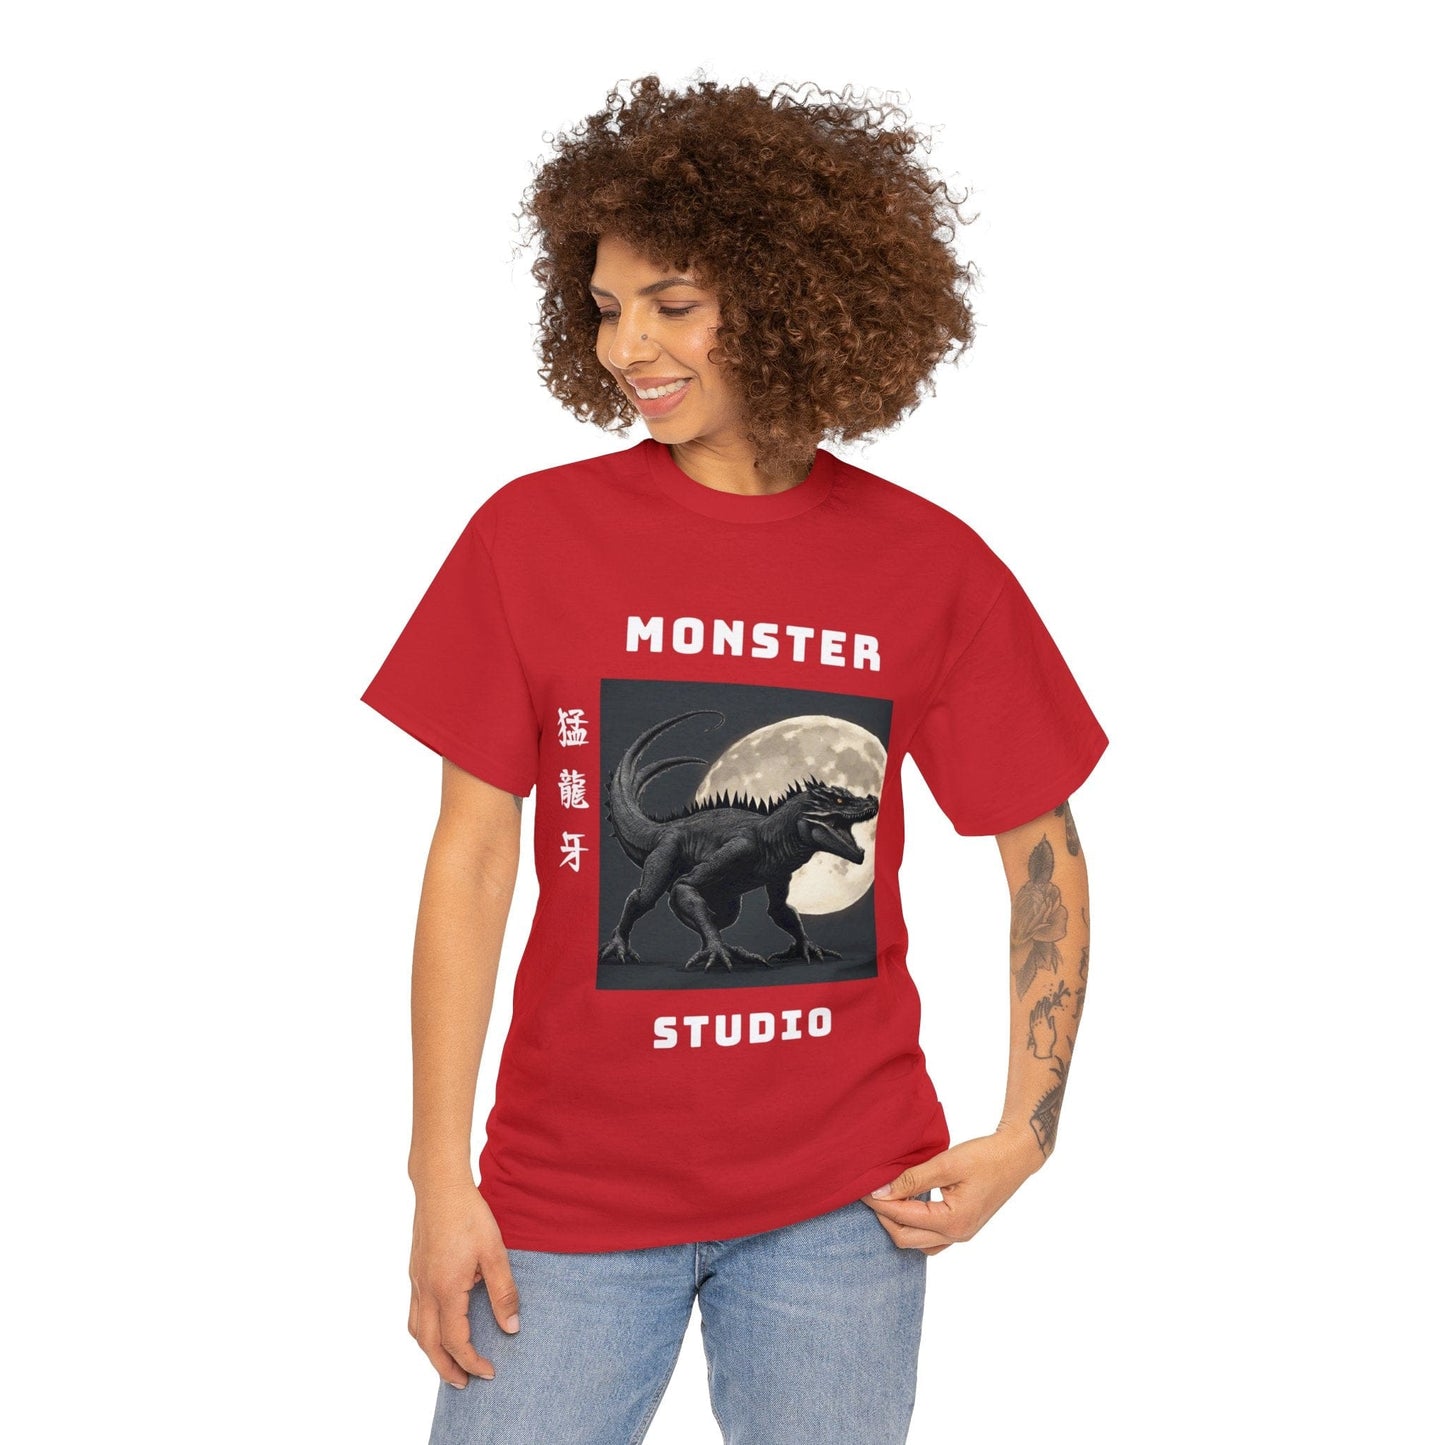 Camisa Godzilla, camisa de hombre godzilla, ciencia ficción robot arte monstruo japonés japón godzilla camiseta gráfica camiseta vintage Camiseta unisex